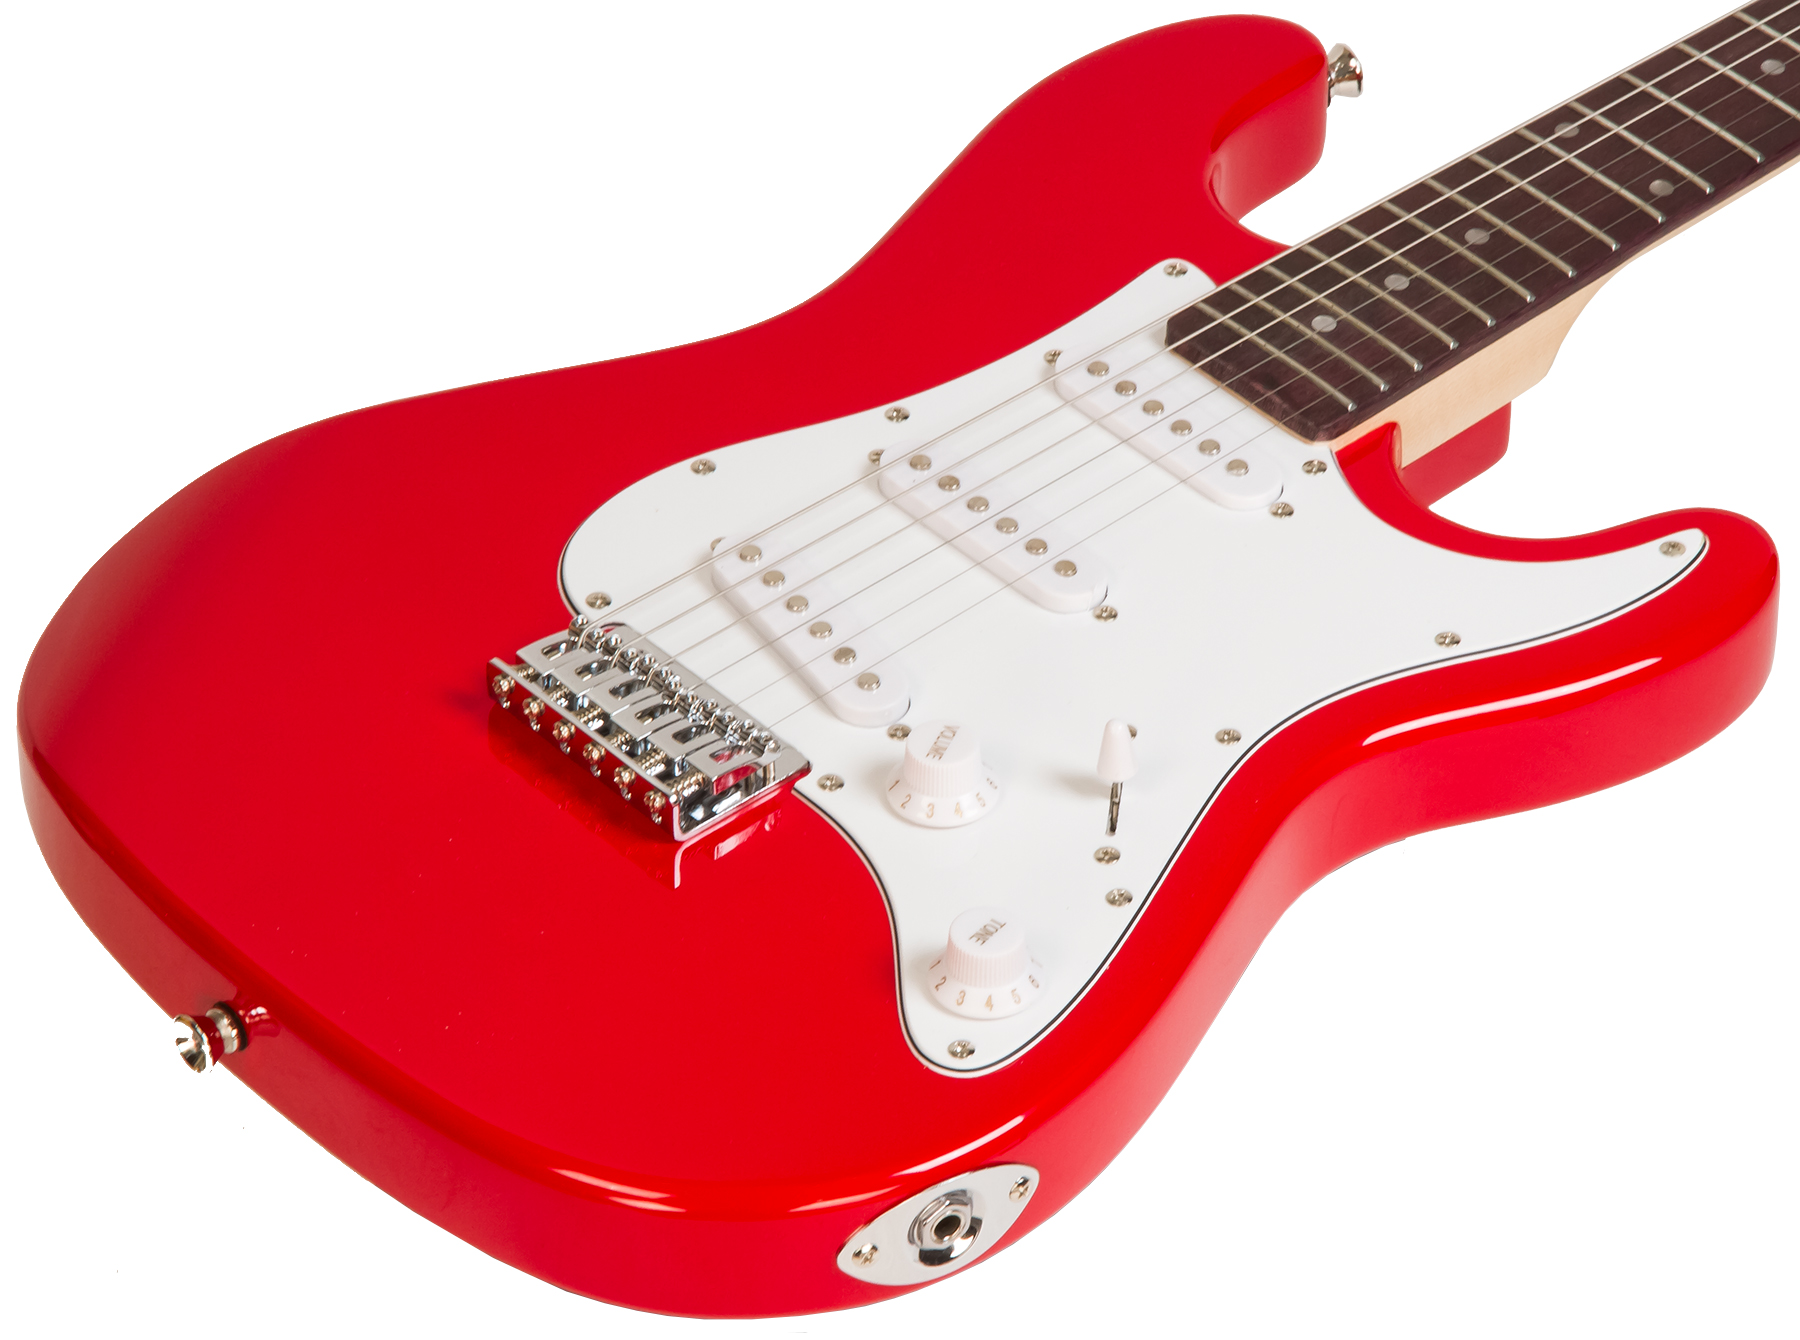 Réplique guitare basse miniature rouge avec support et étui